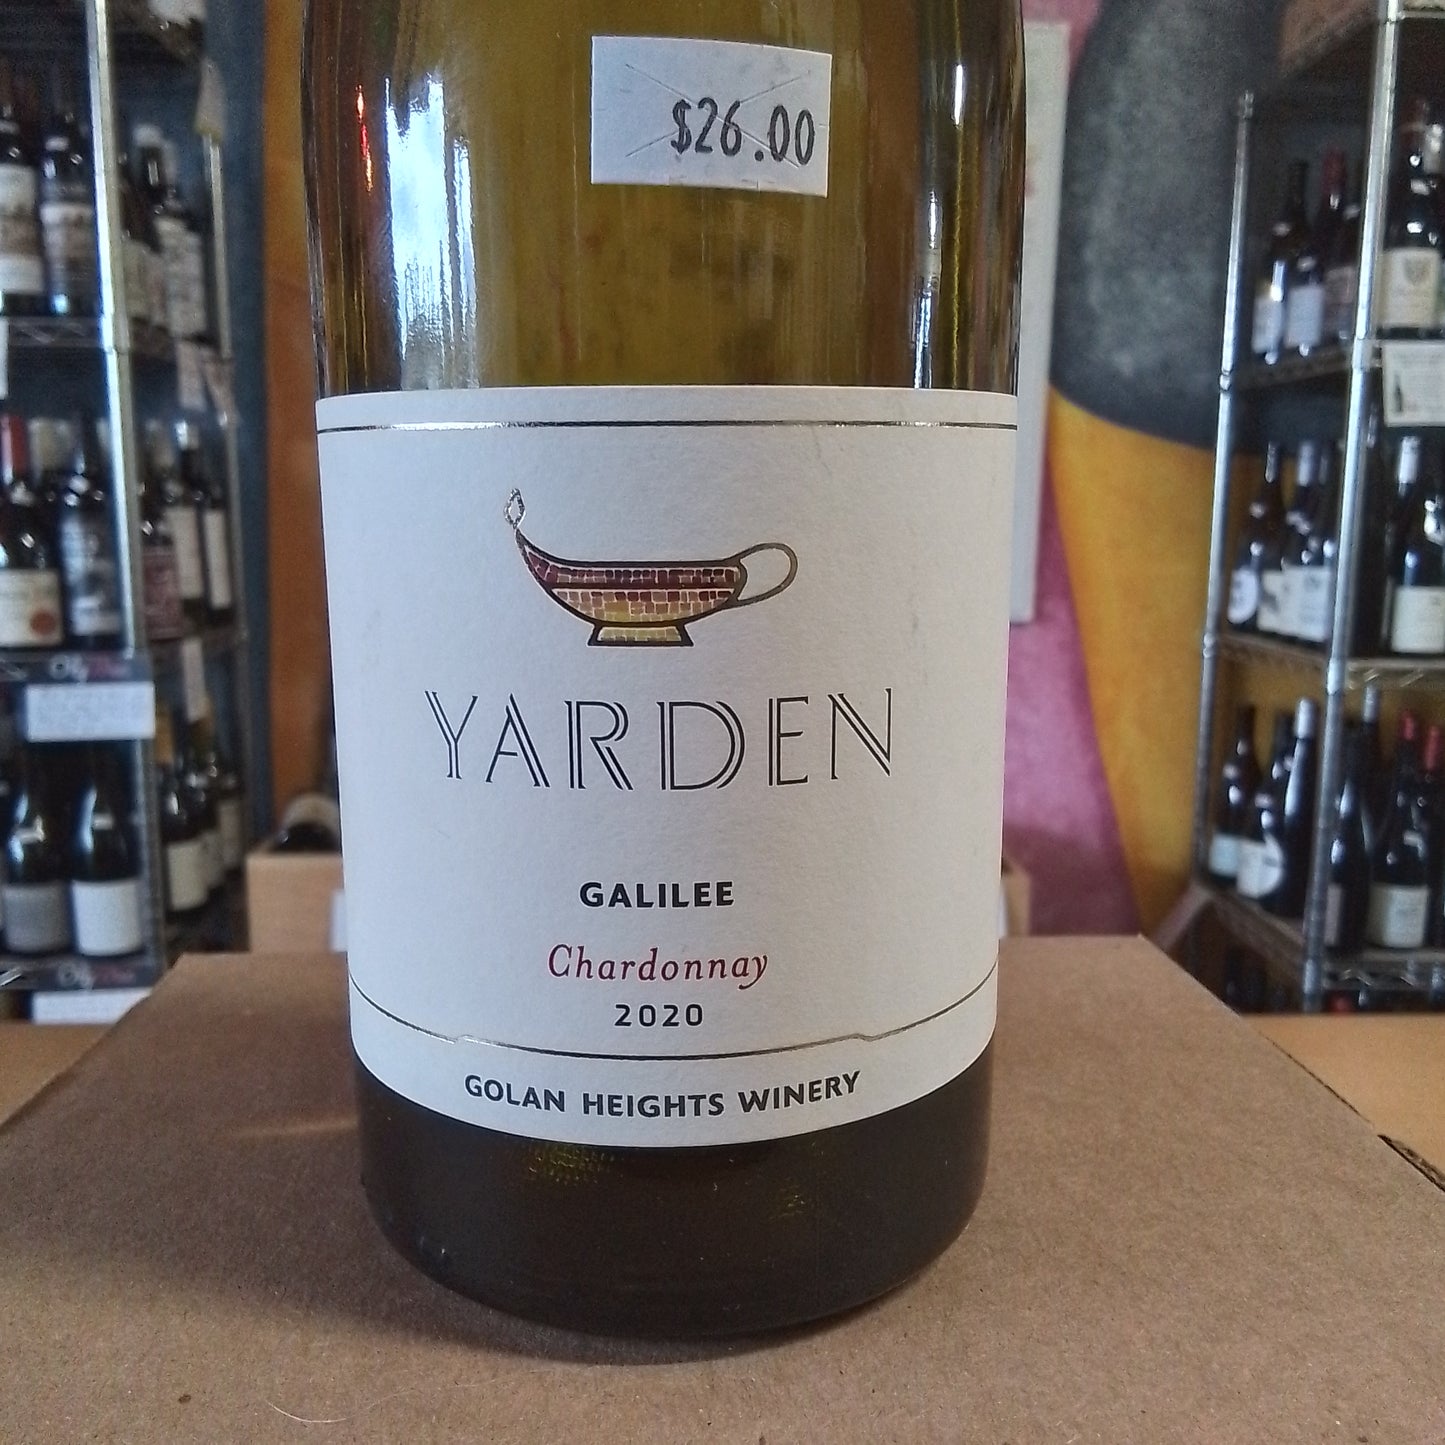 GOLAN HEIGHTS 2020 Chardonnay 'Yarden' (Galilee, Isreal)